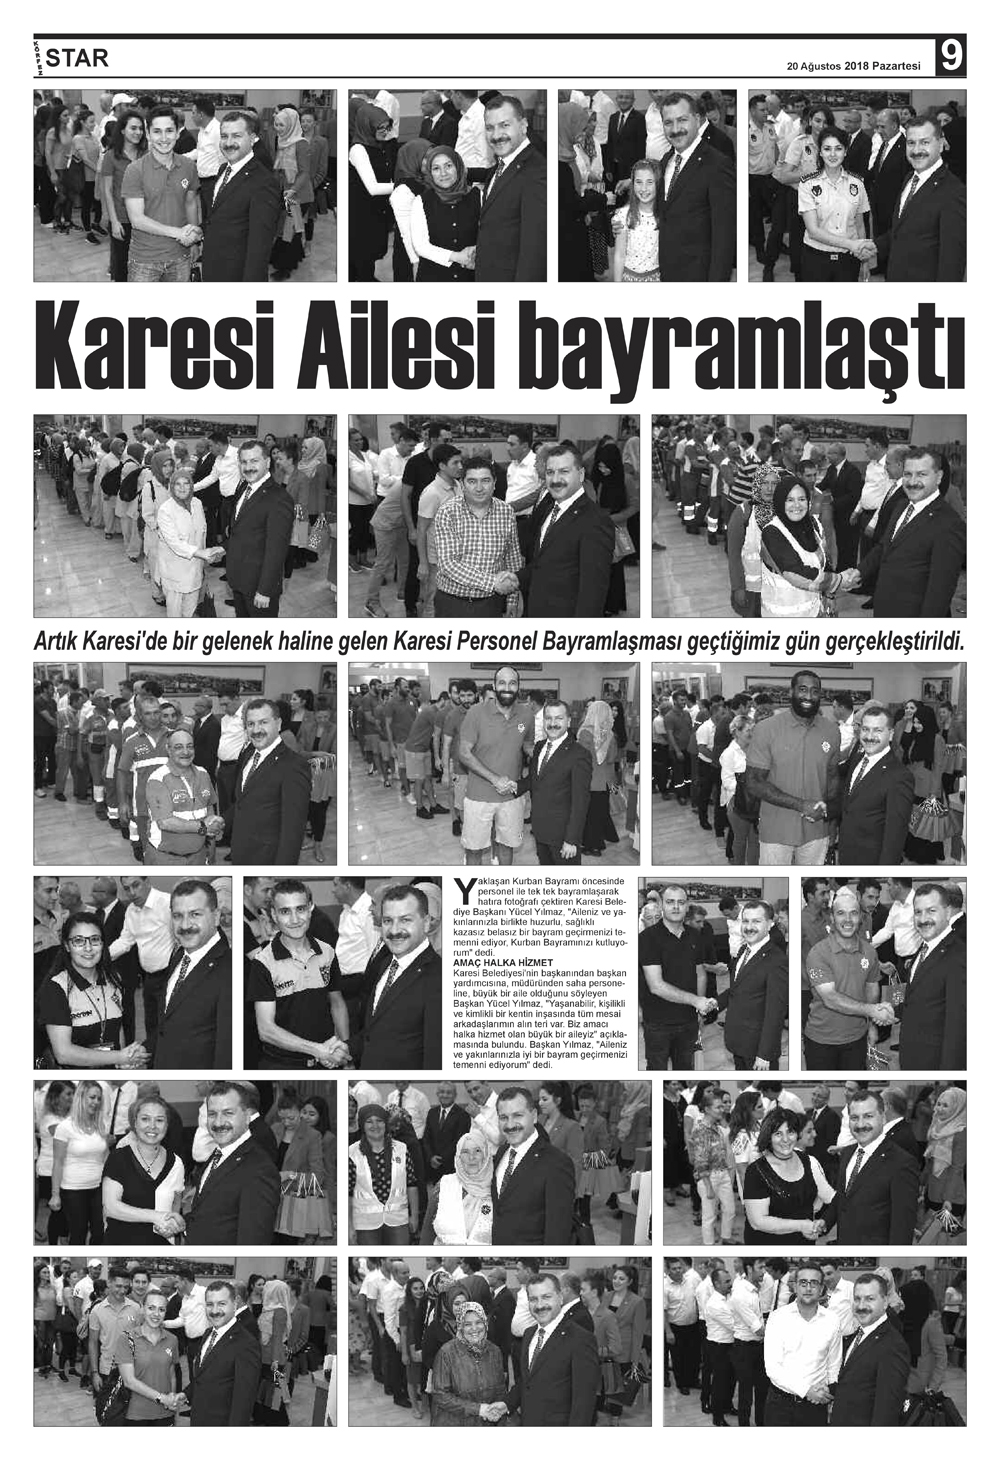 20082018-tarihli-gazetemiz-5118-08-19025046.jpg